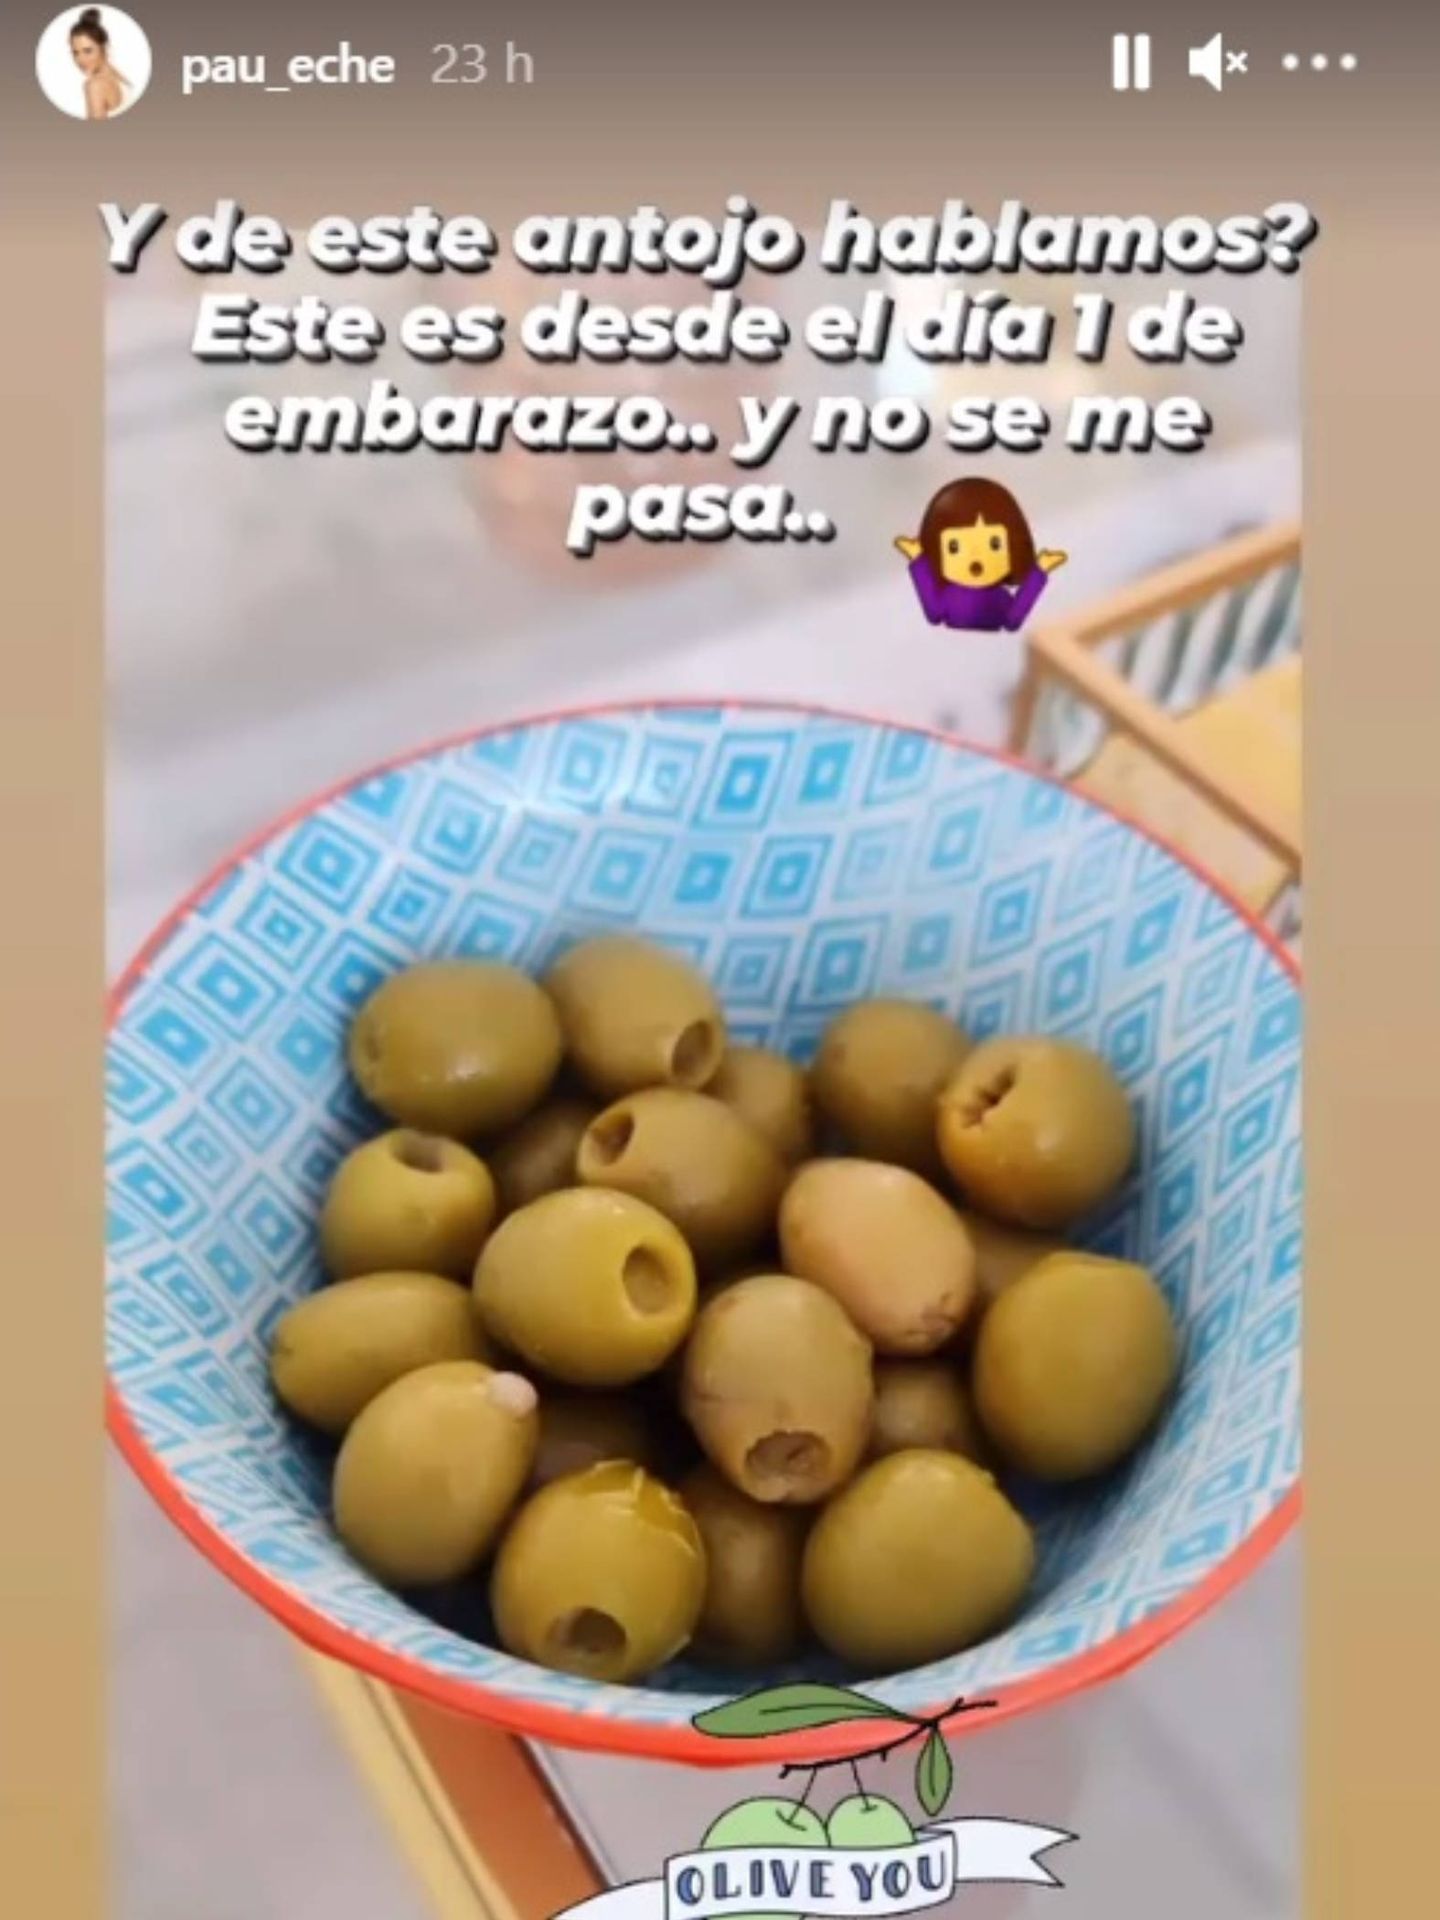 Paula Echevarría confiesa que tiene antojo de aceitunas desde el primer día. (Instagram @pau_eche)